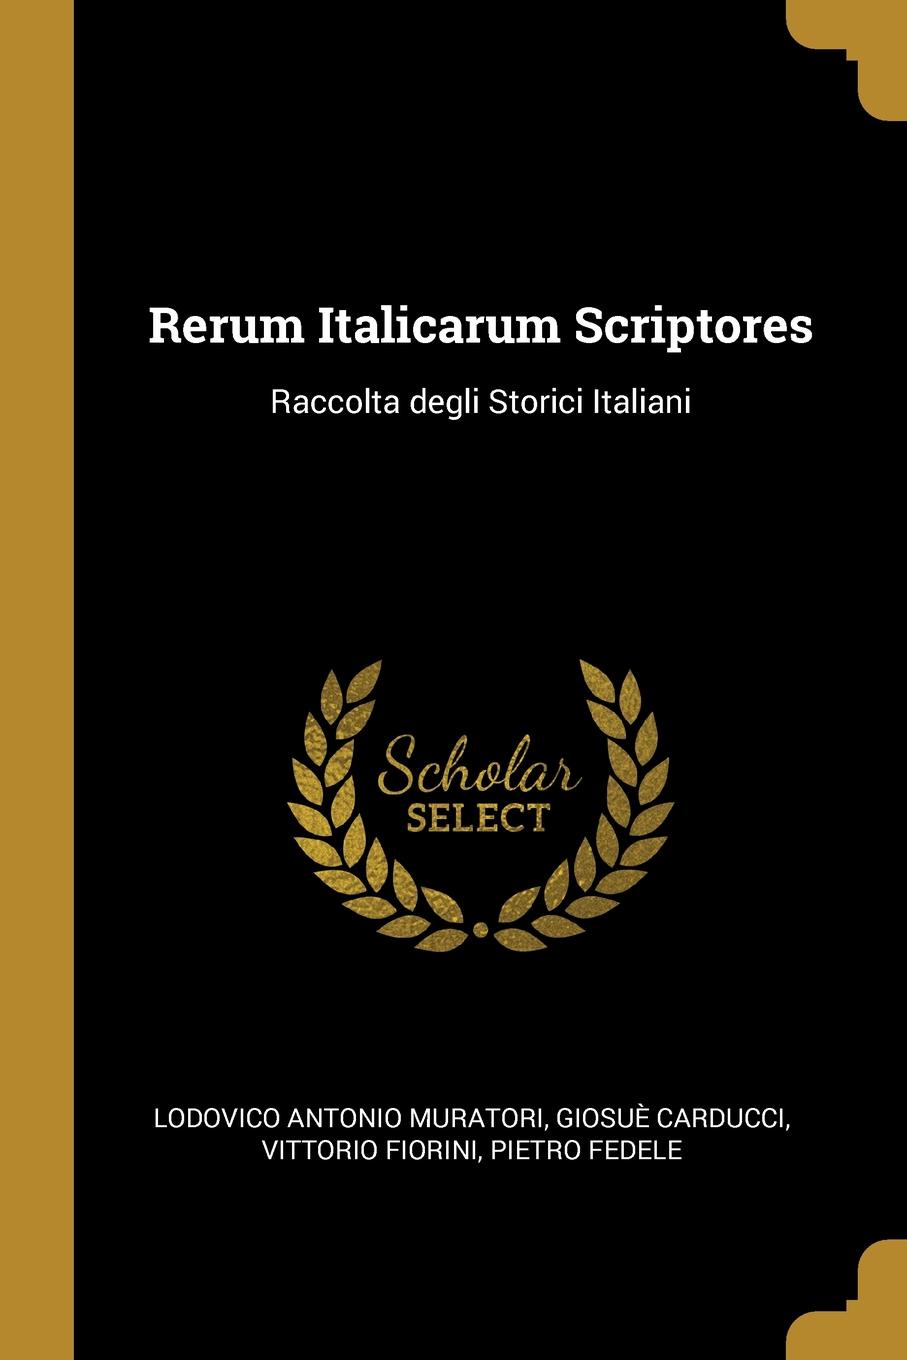 Rerum Italicarum Scriptores. Raccolta degli Storici Italiani